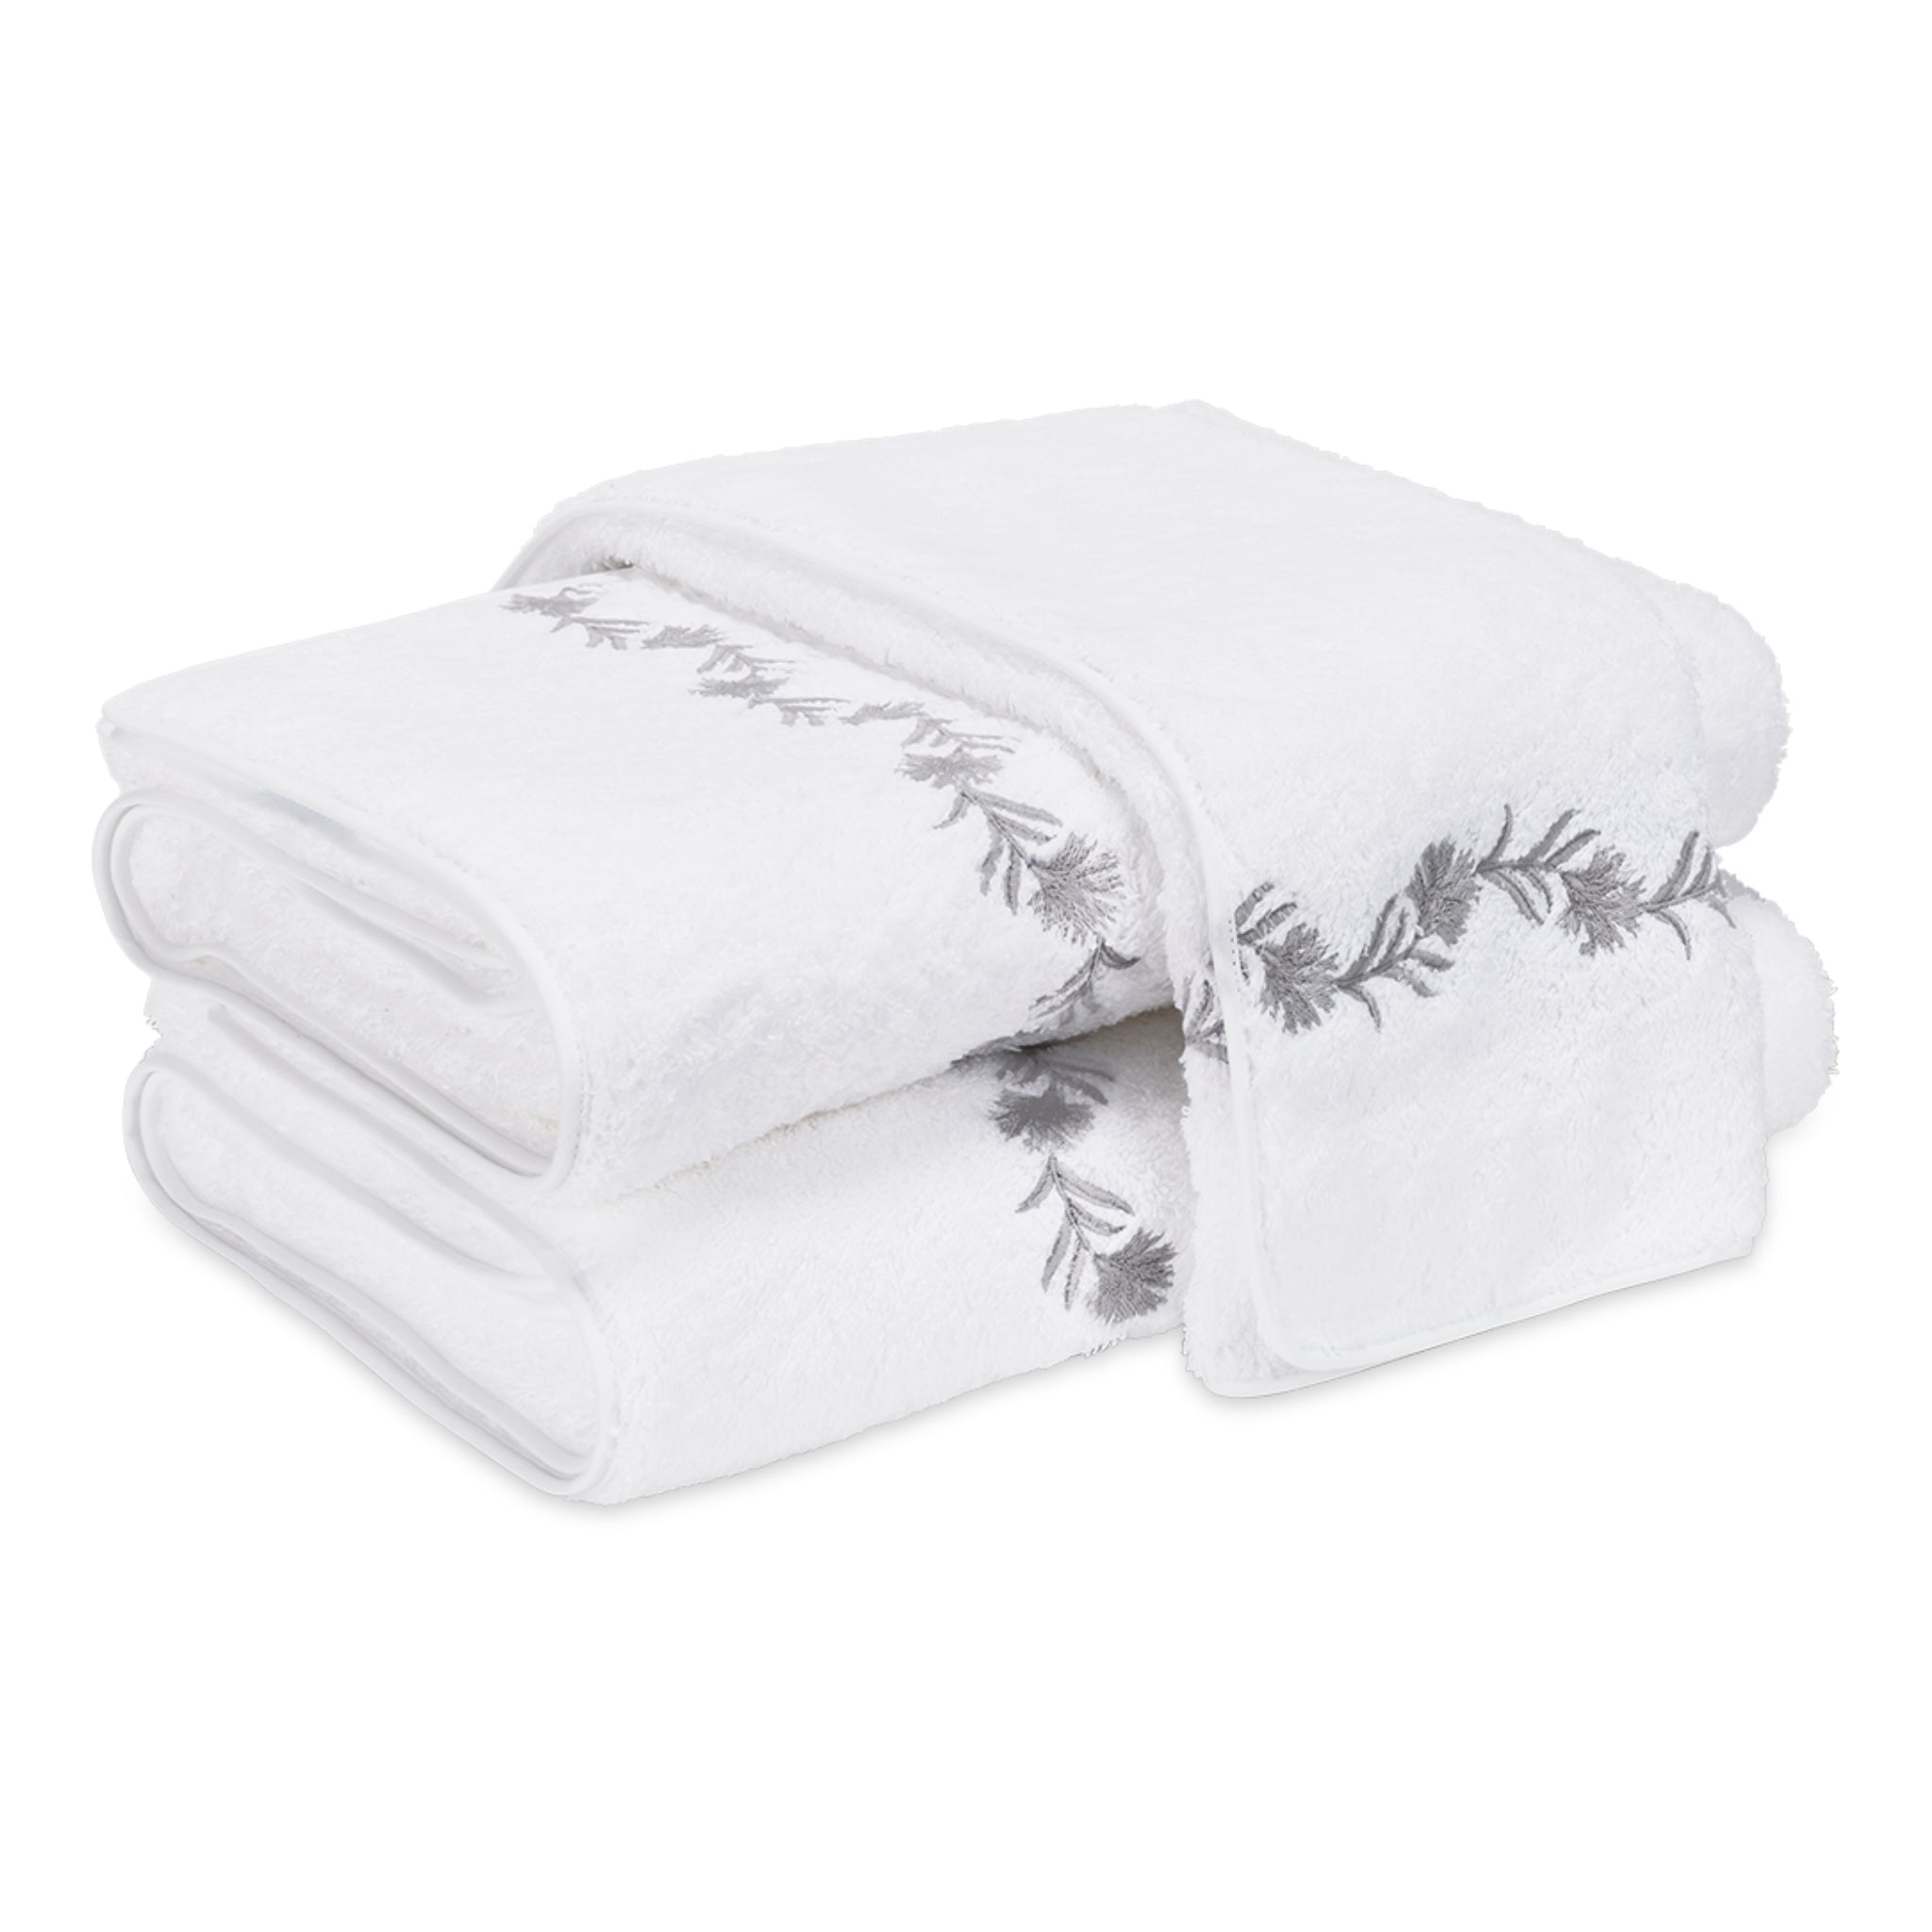 https://flandb.com/cdn/shop/products/Matouk-Daphne-Bath-Towels-Silver-Fine-Linen_2048x.jpg?v=1663990910